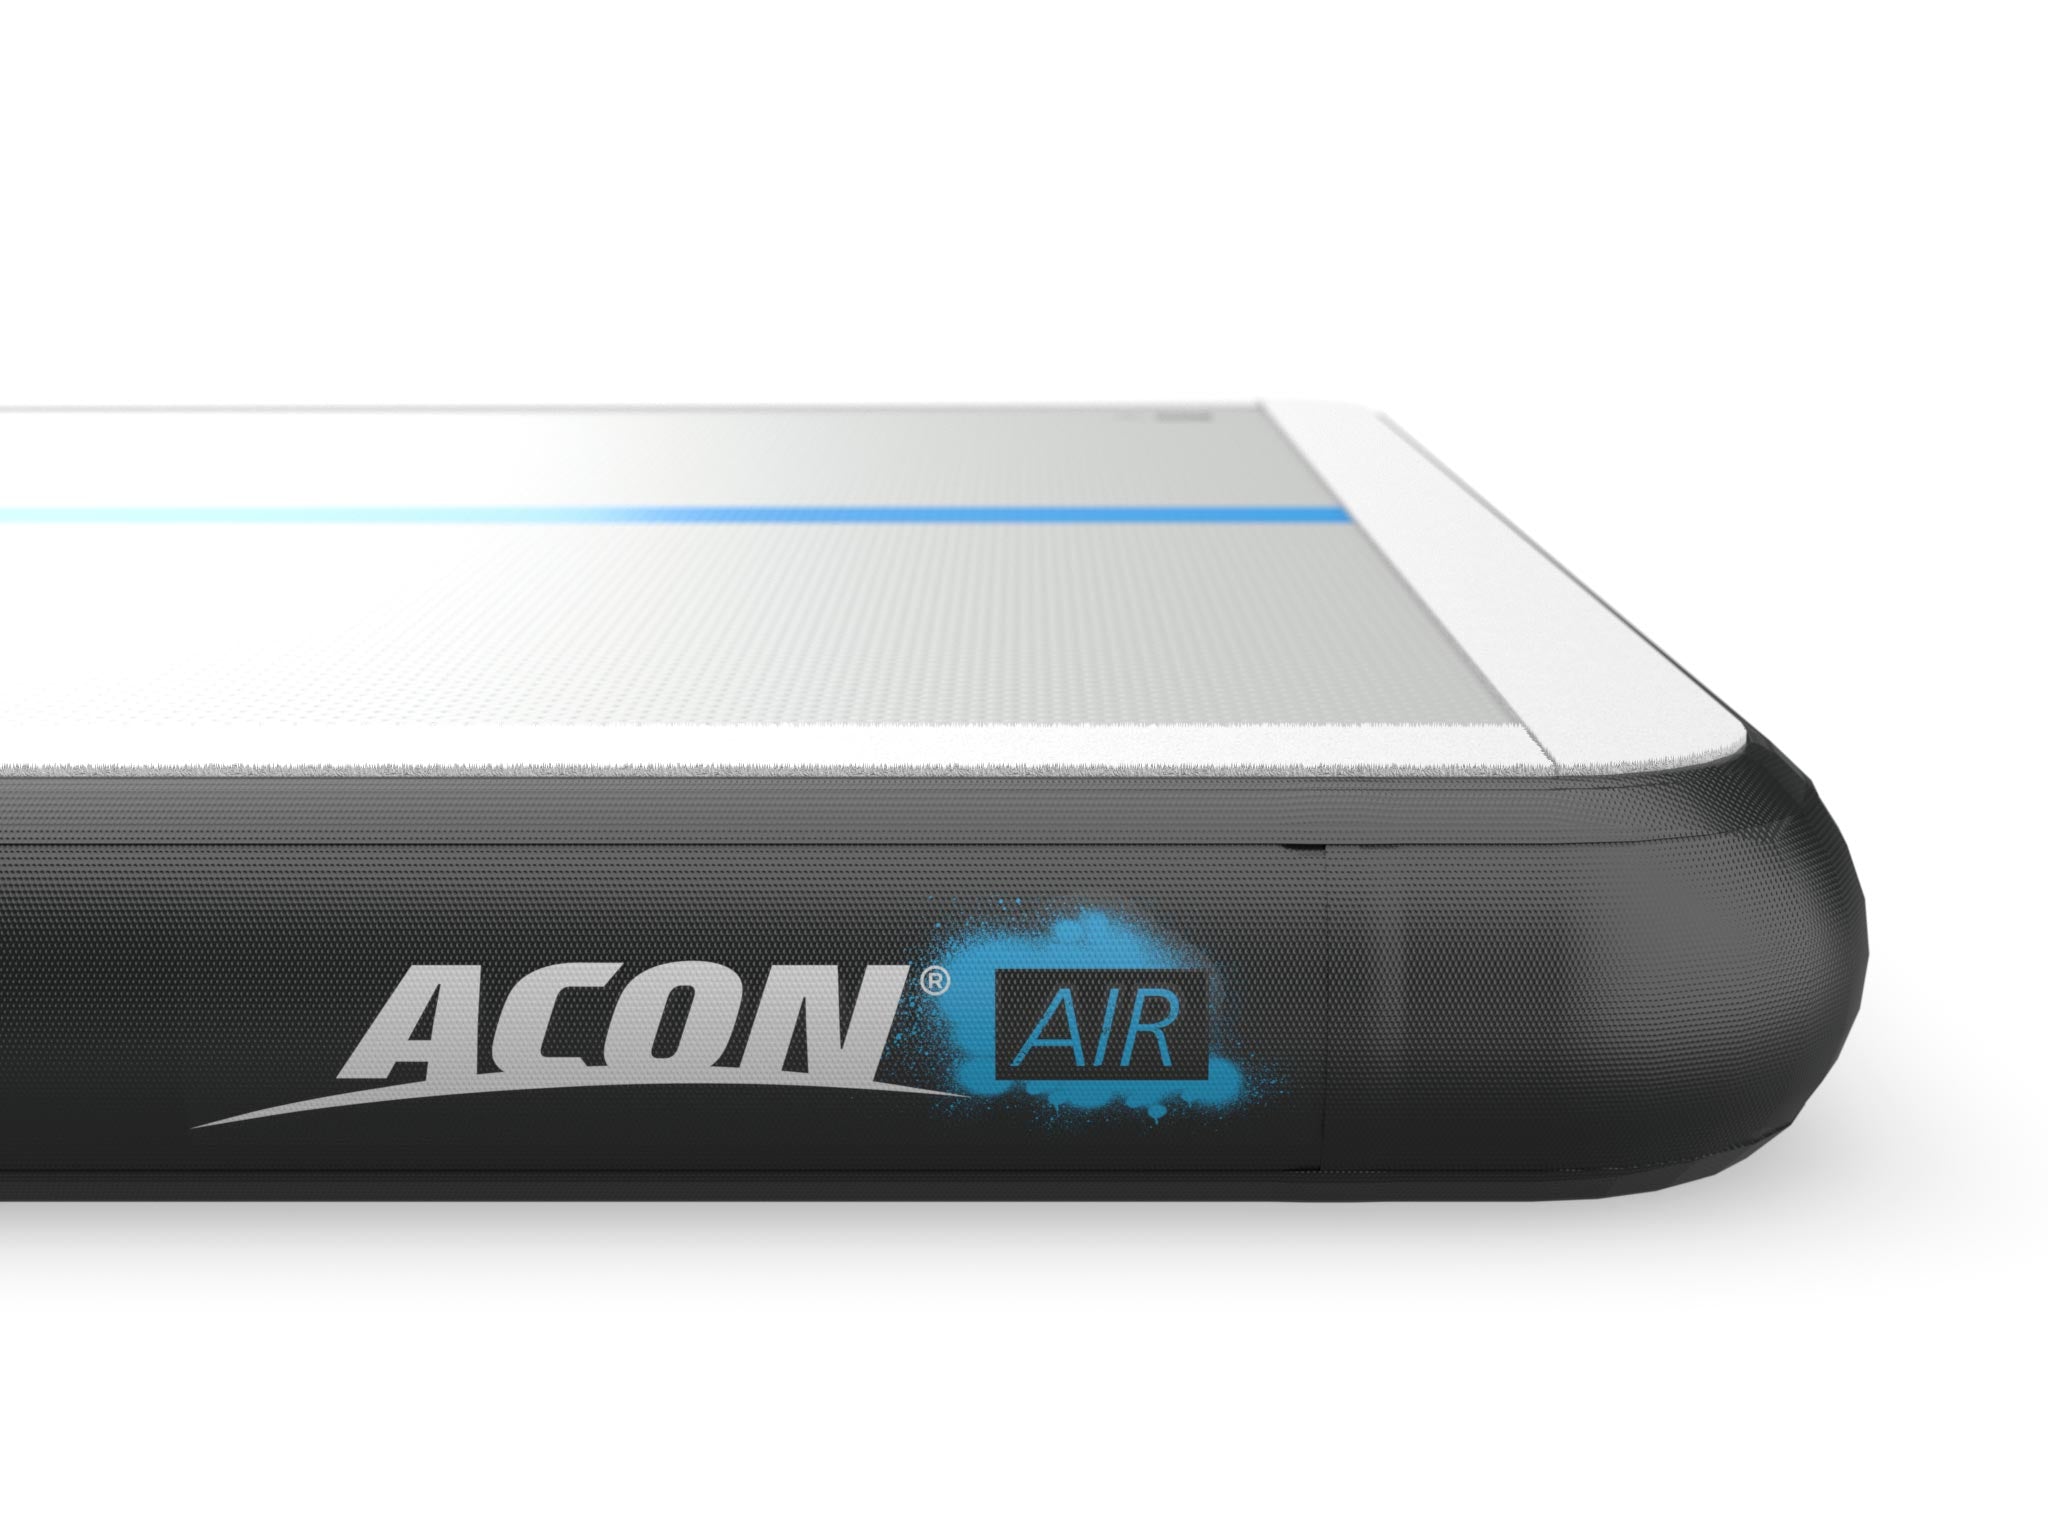 Grand modèle Acon Airtrack 4 m - Détail du logo ACON